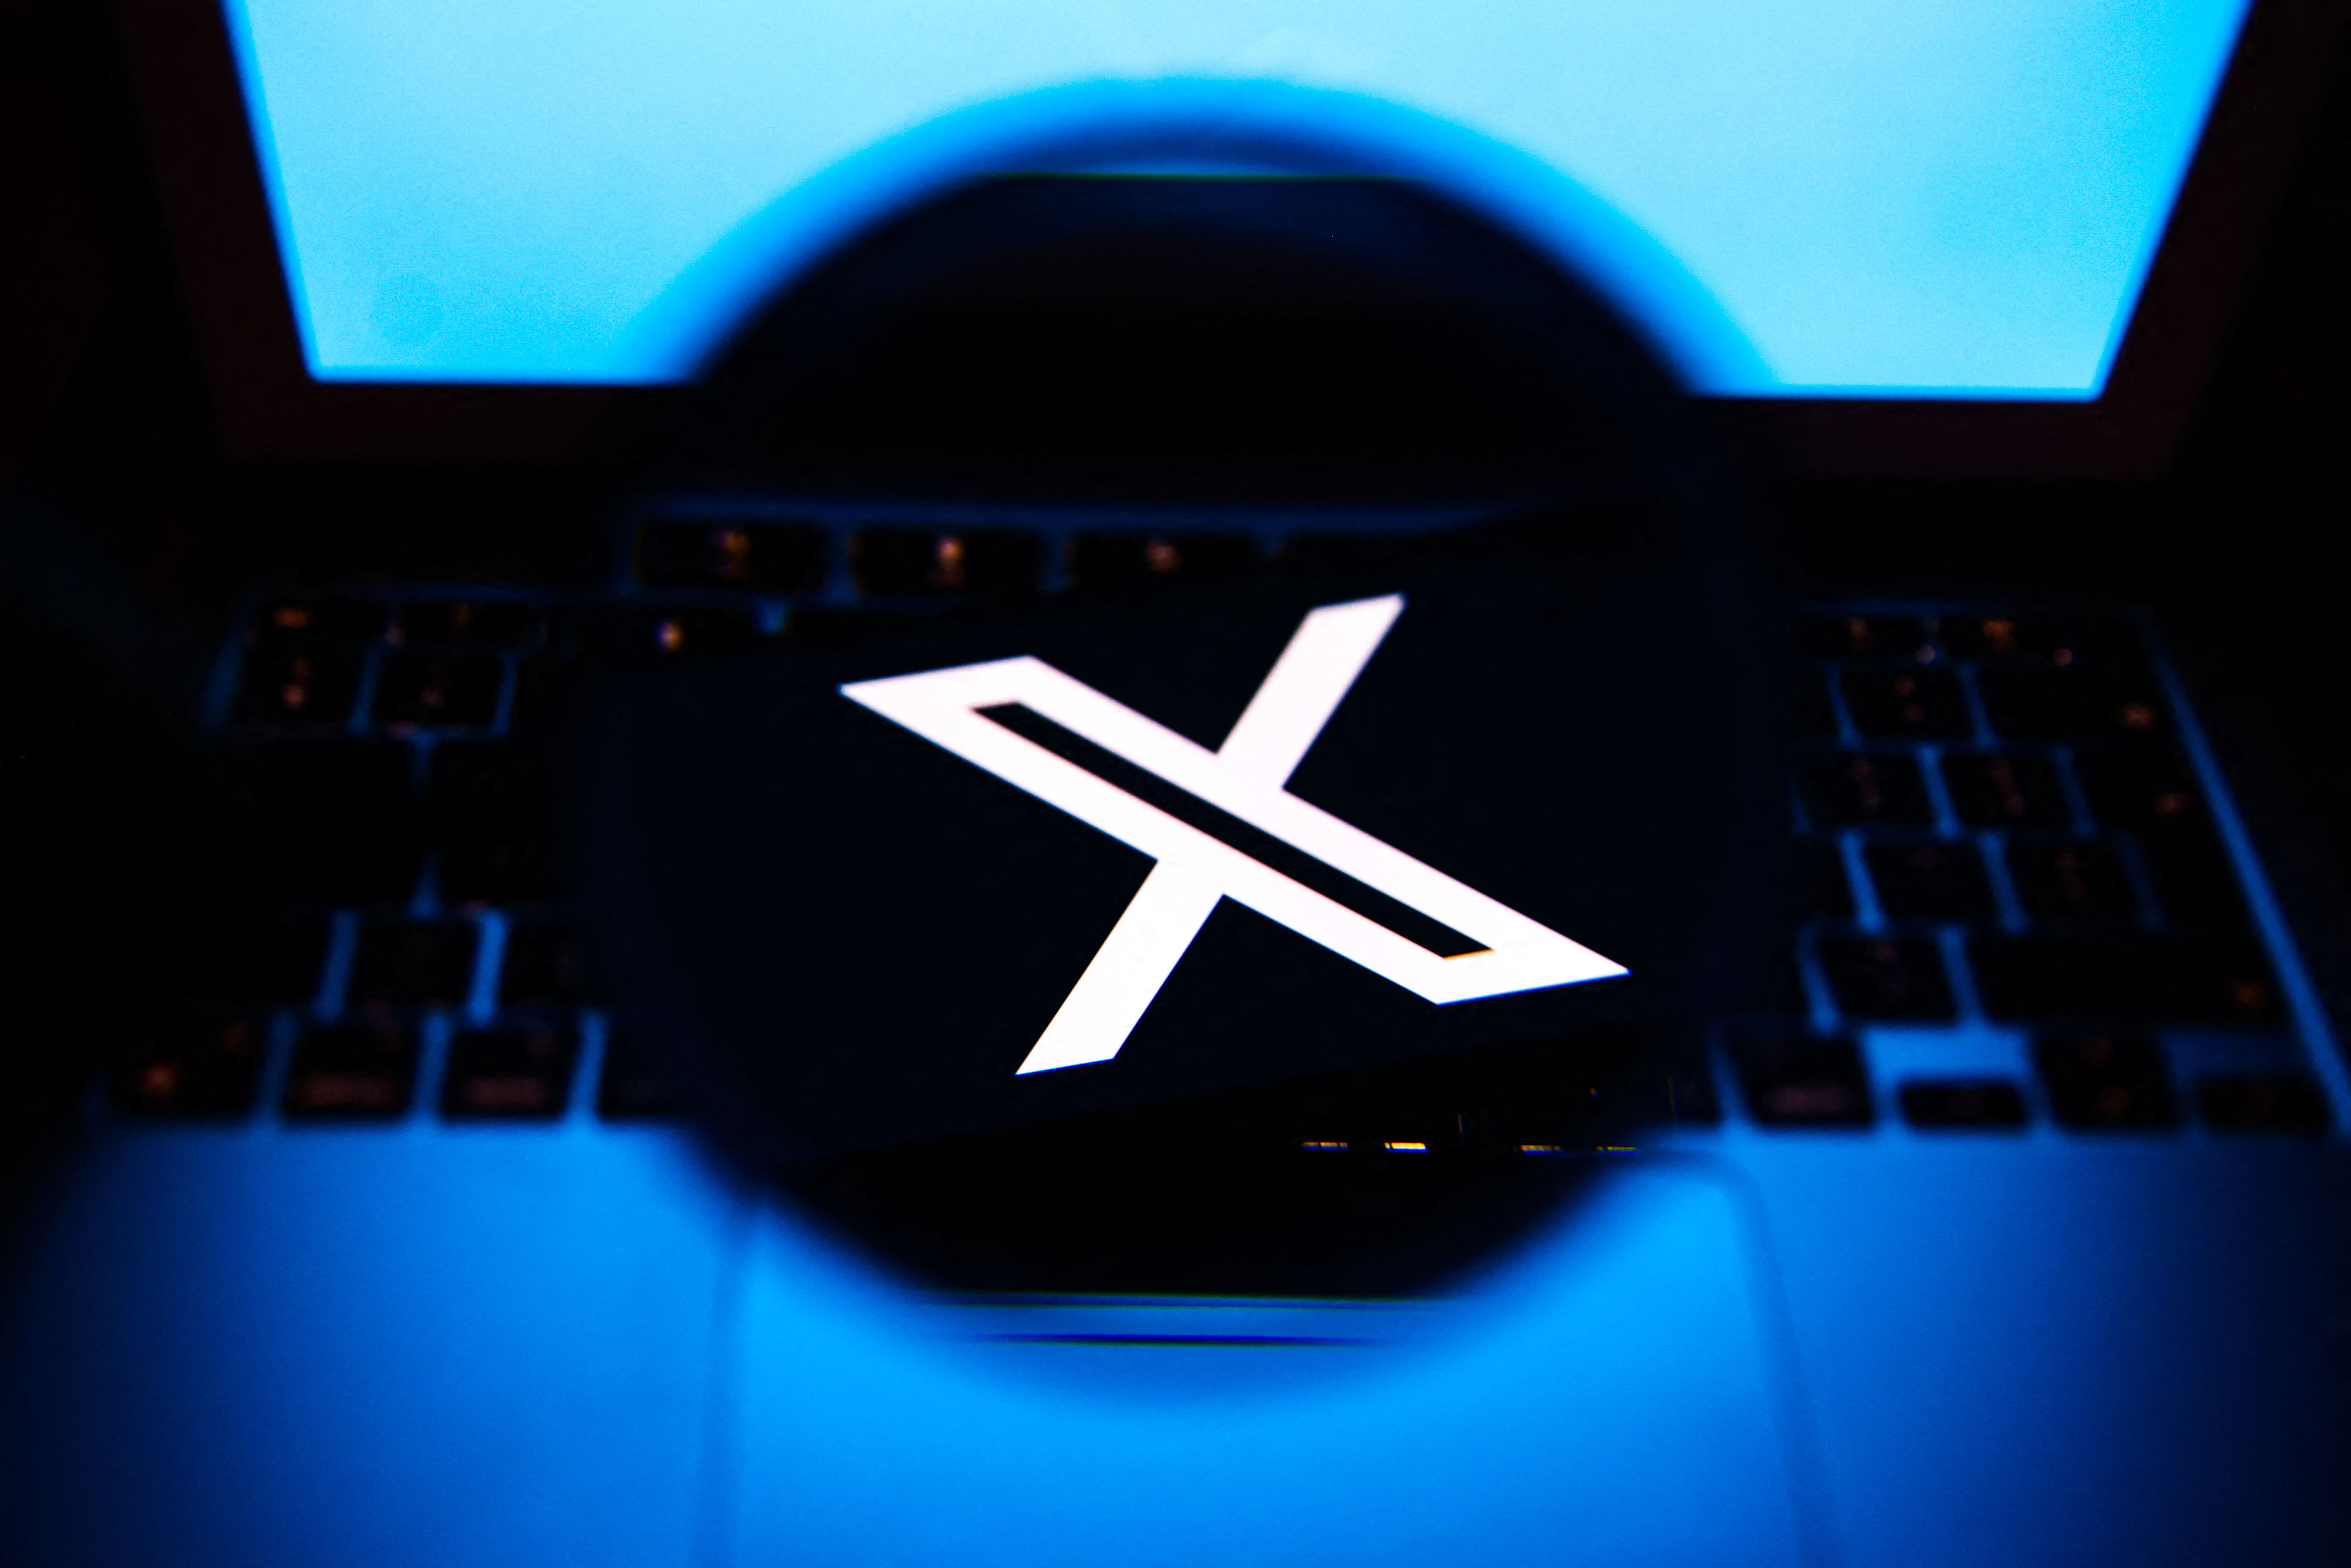 lutte contre les faux comptes : les nouveaux utilisateurs de x devront payer pour publier des messages